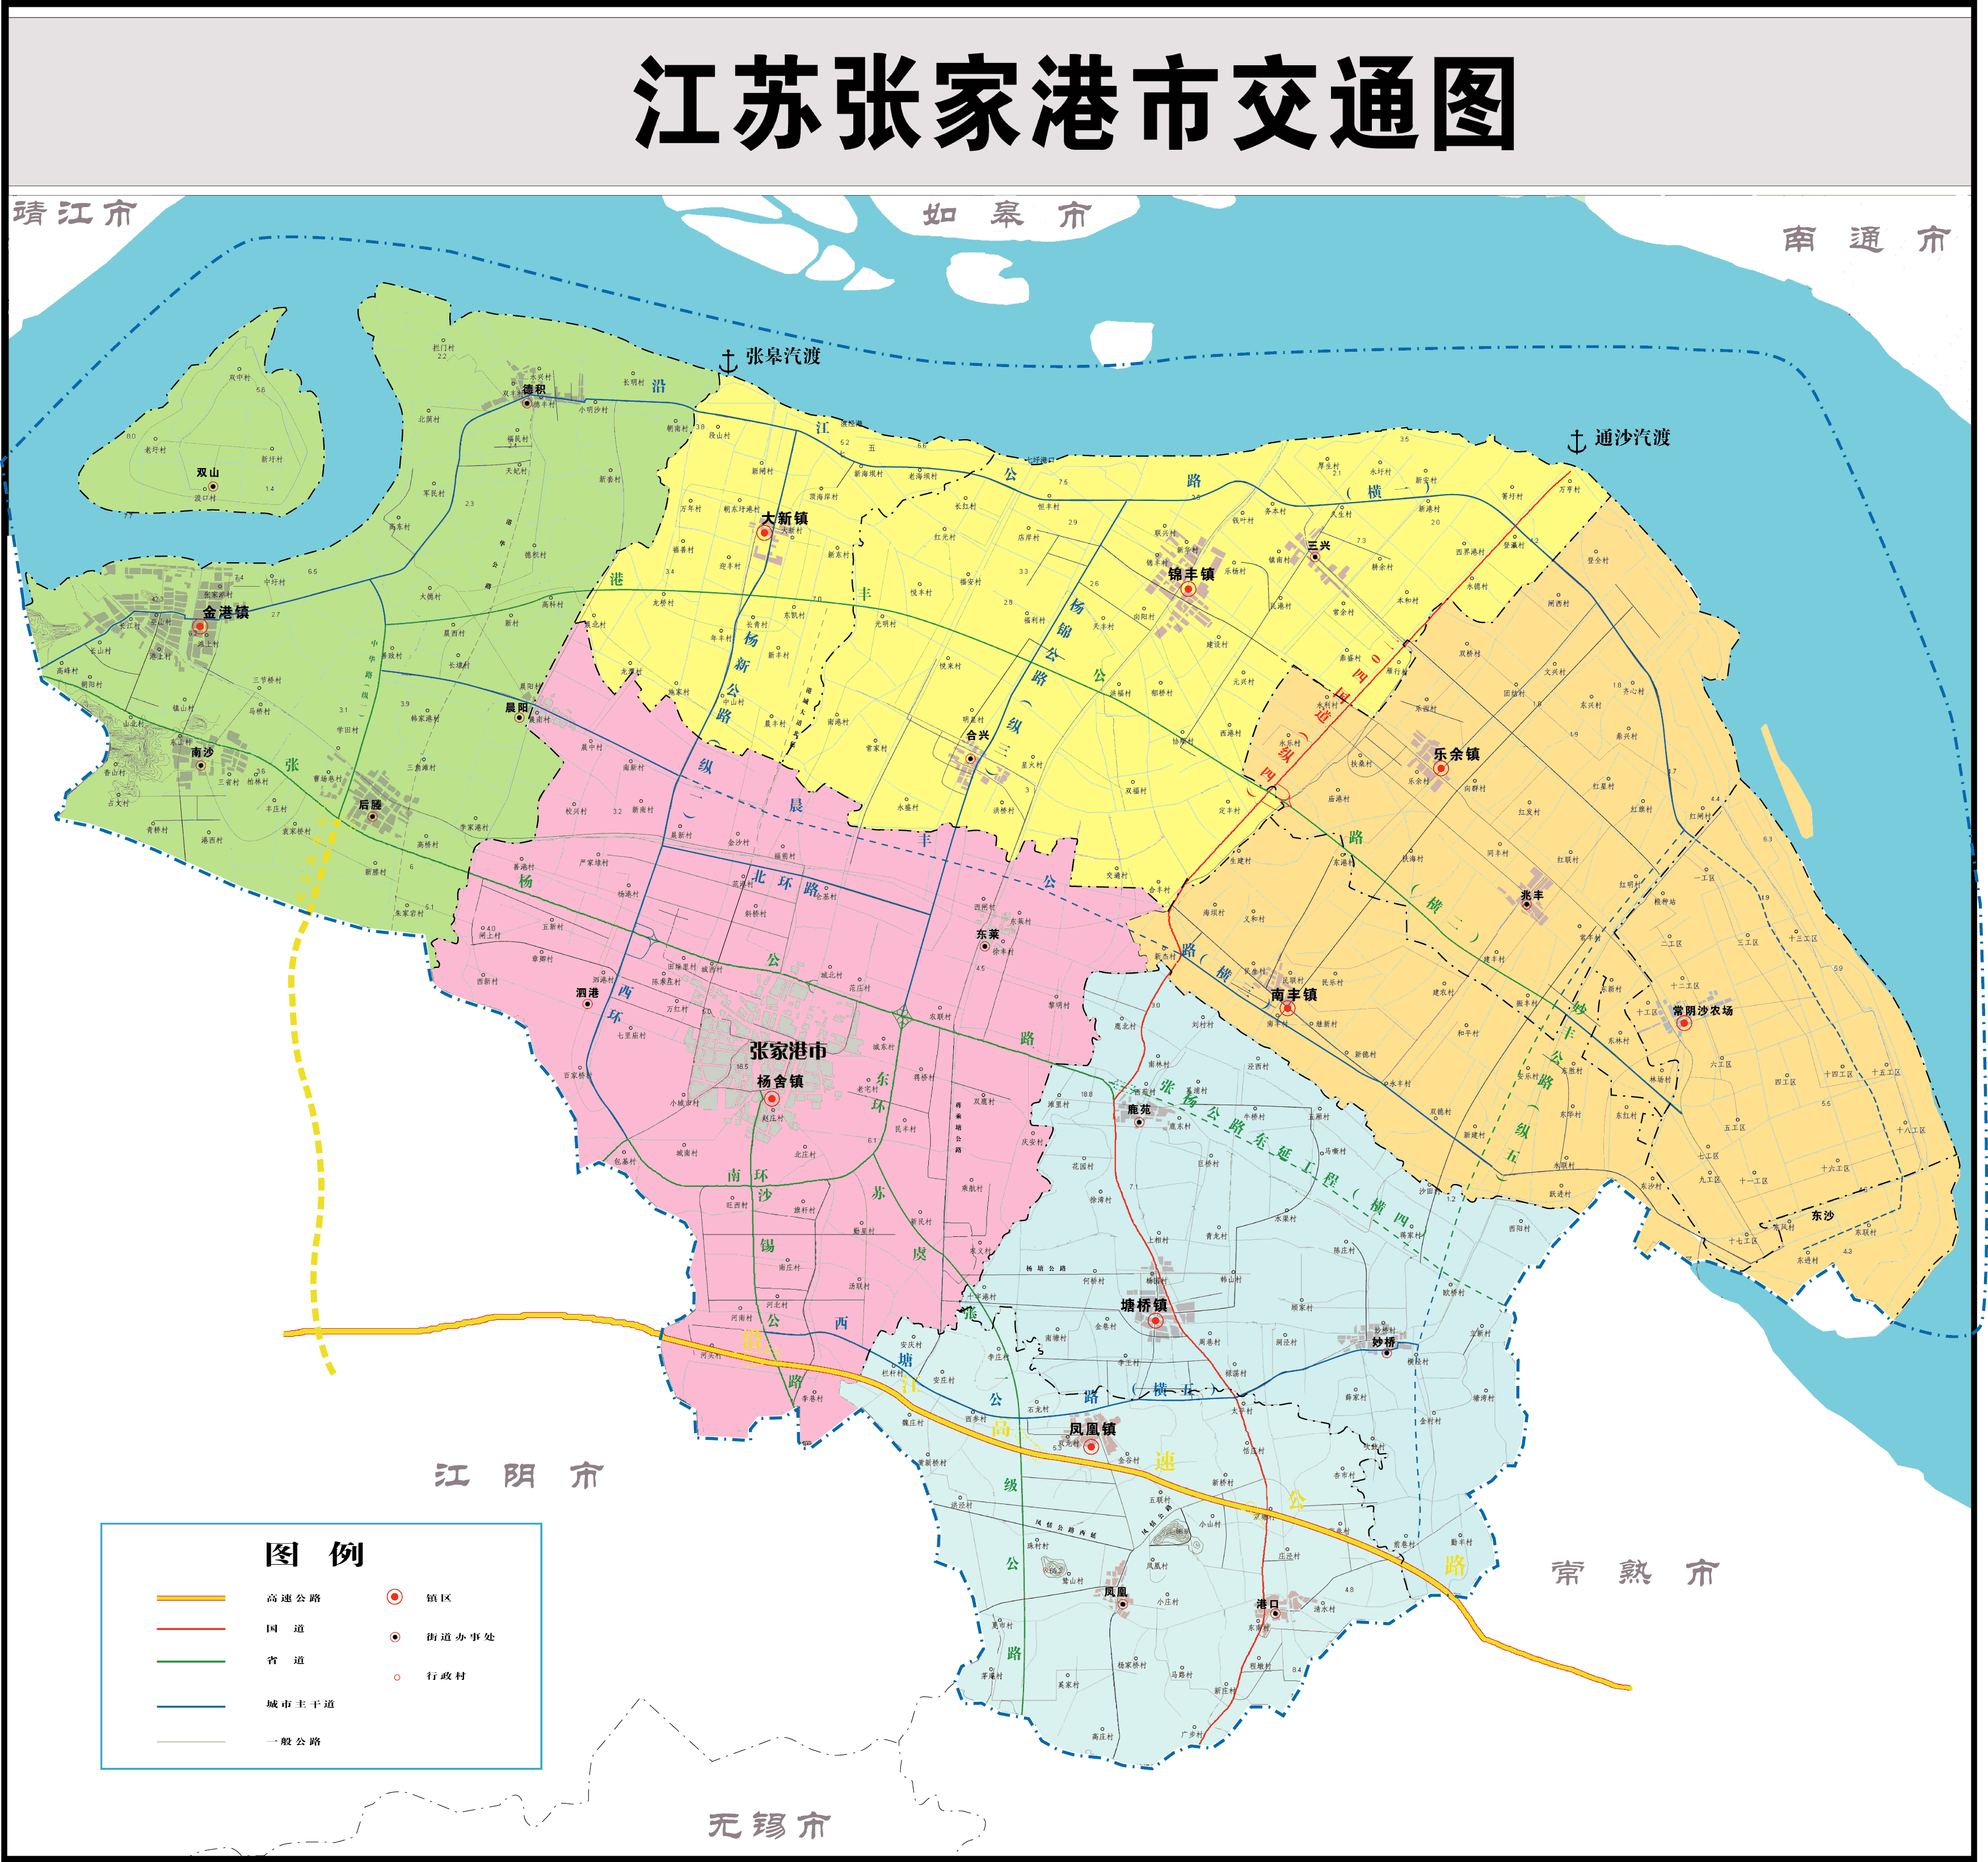 东部 张家港市交通图  北部各省区市相关的区划地图帖总索引http